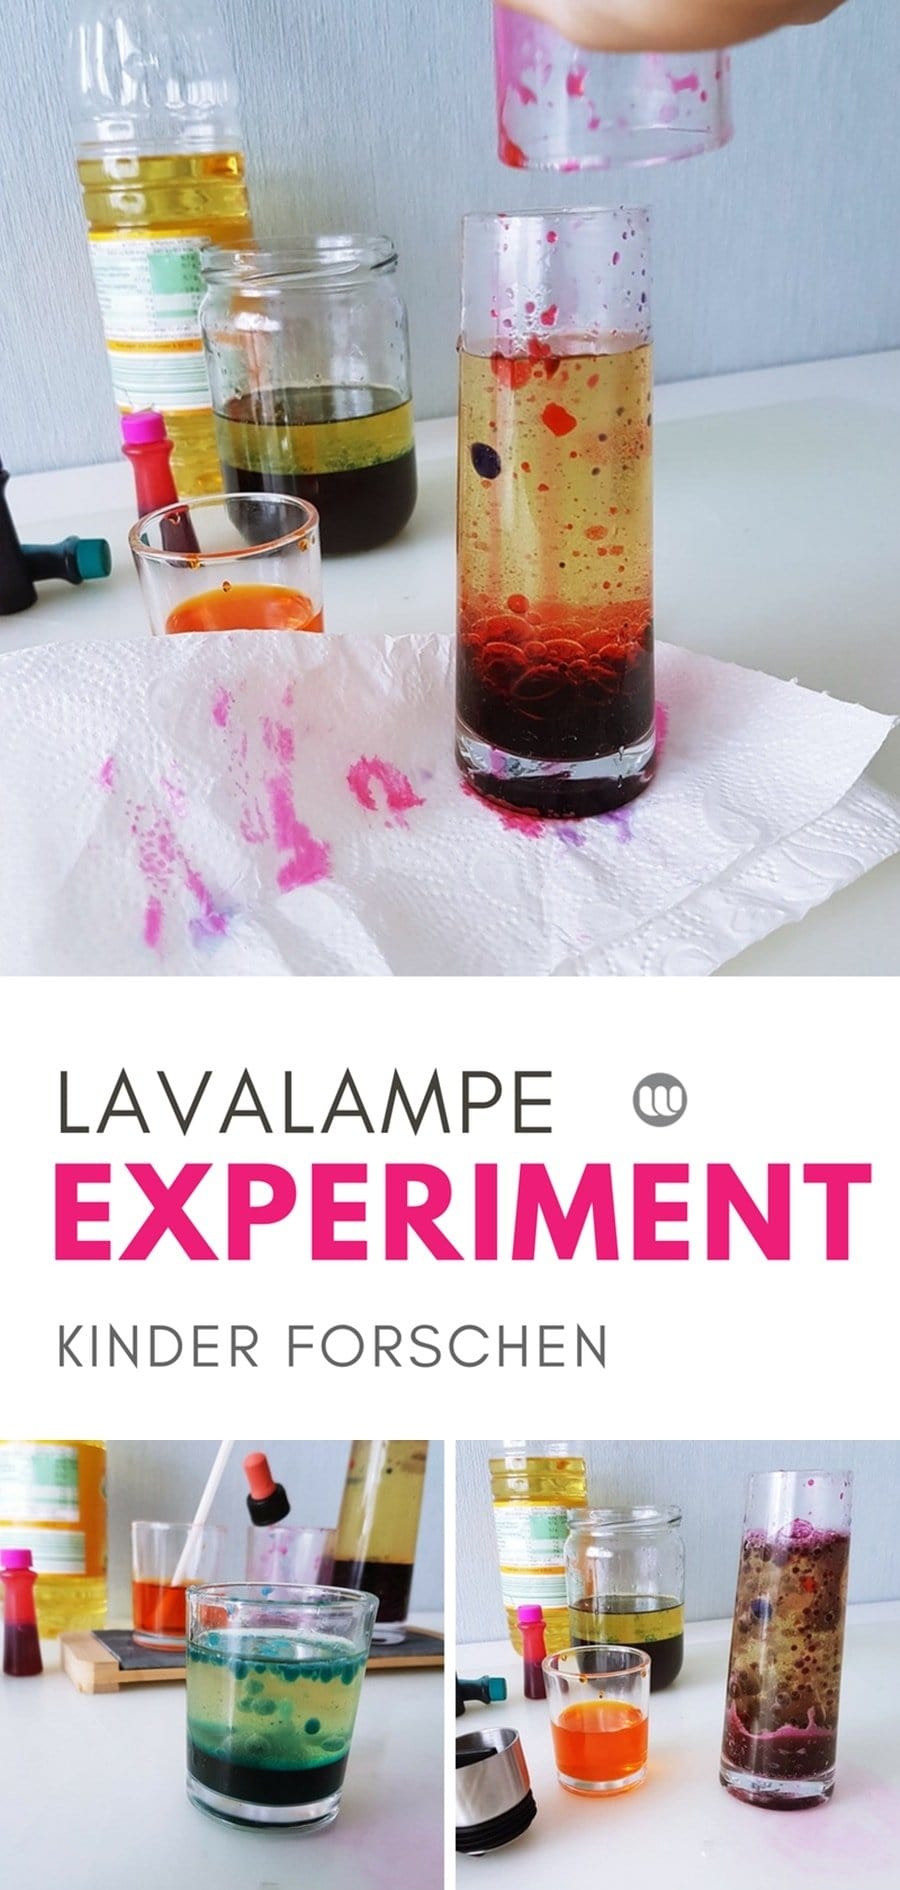 Lavalampe selbstgemacht: Kinder Experimente mit Wasser, Öl und bunten Farben. Lavalampen Kinder Experiment mit einfachen Materialien selbermachen.